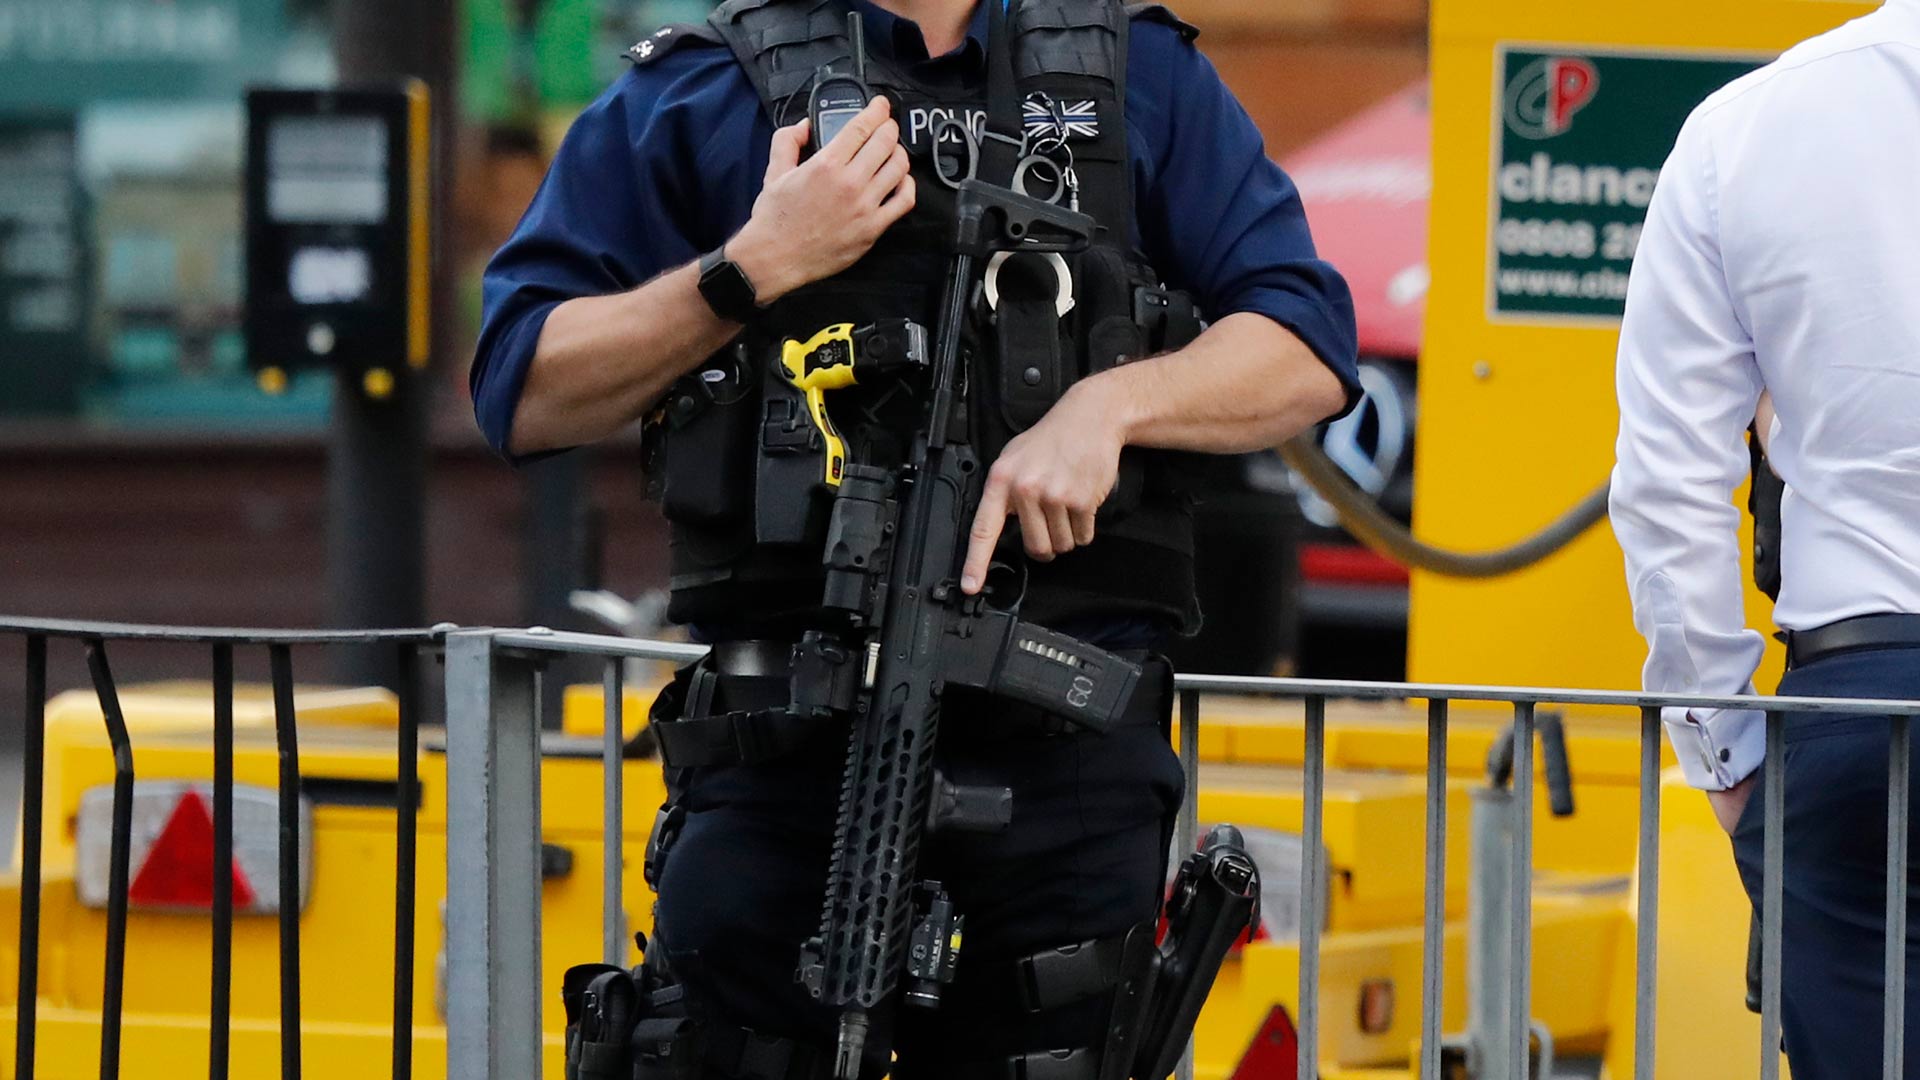 El Reino Unido rebaja el nivel de amenaza terrorista a "sustancial"